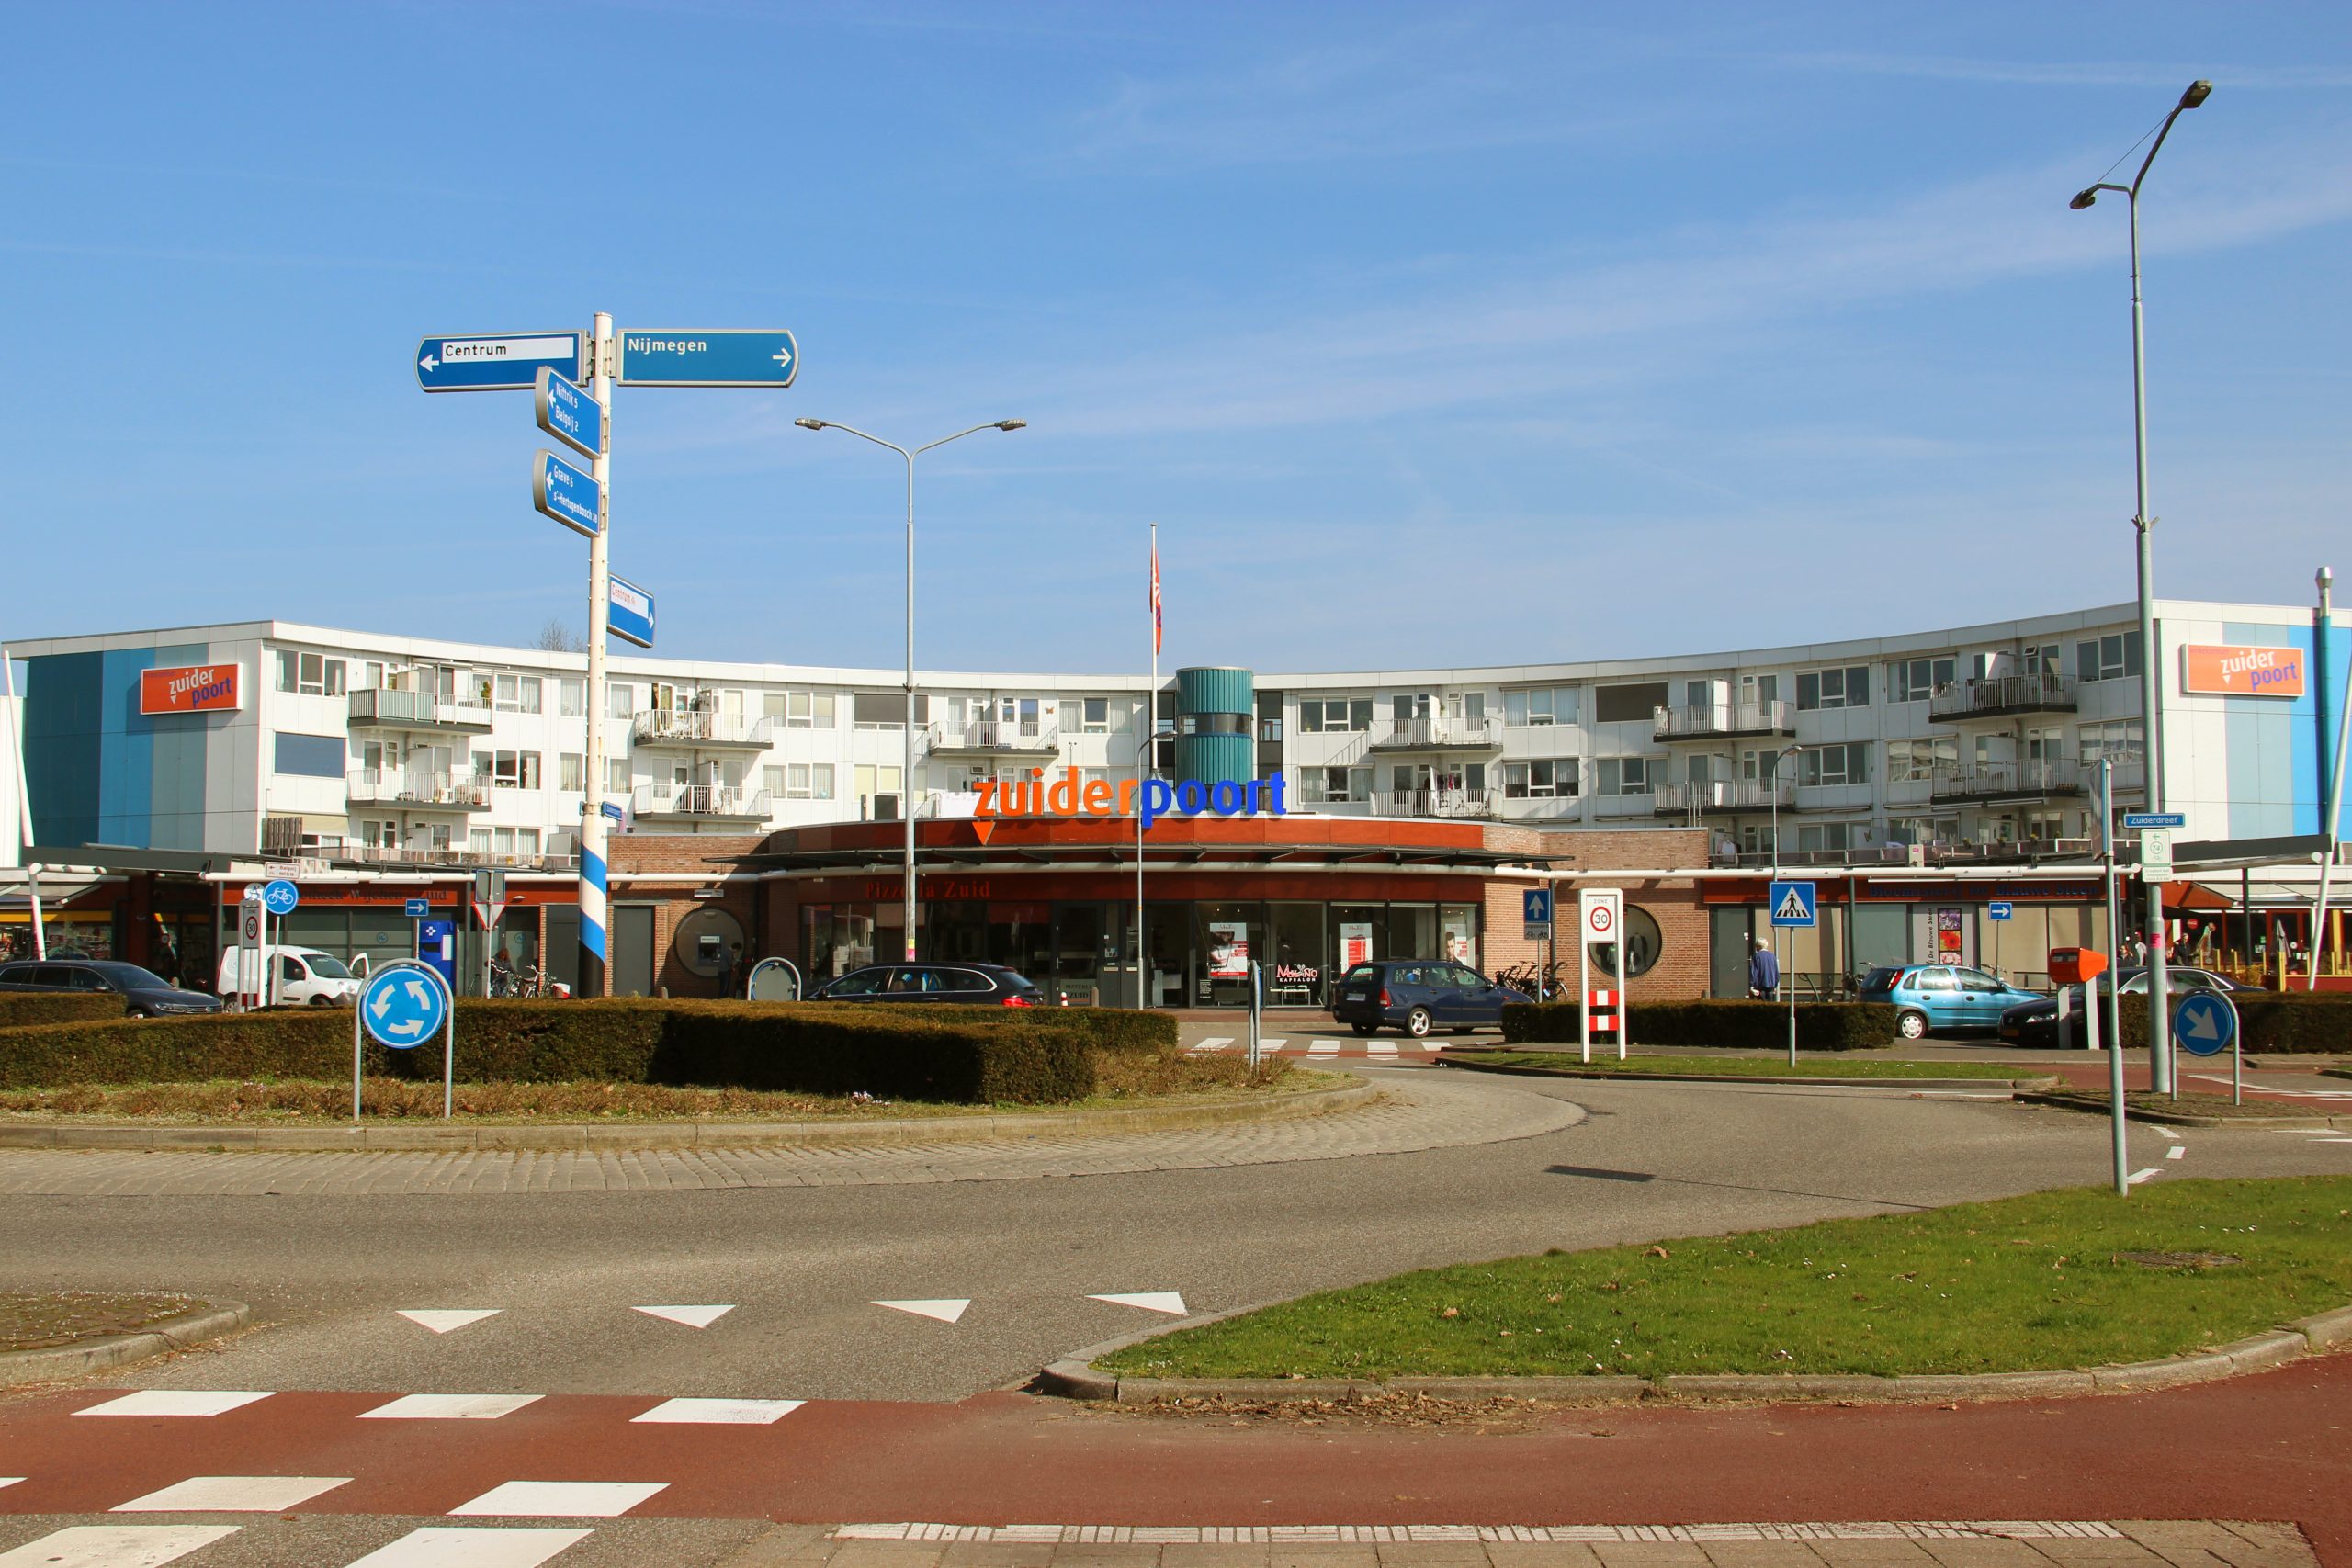 (c) Winkelcentrumzuiderpoort.nl